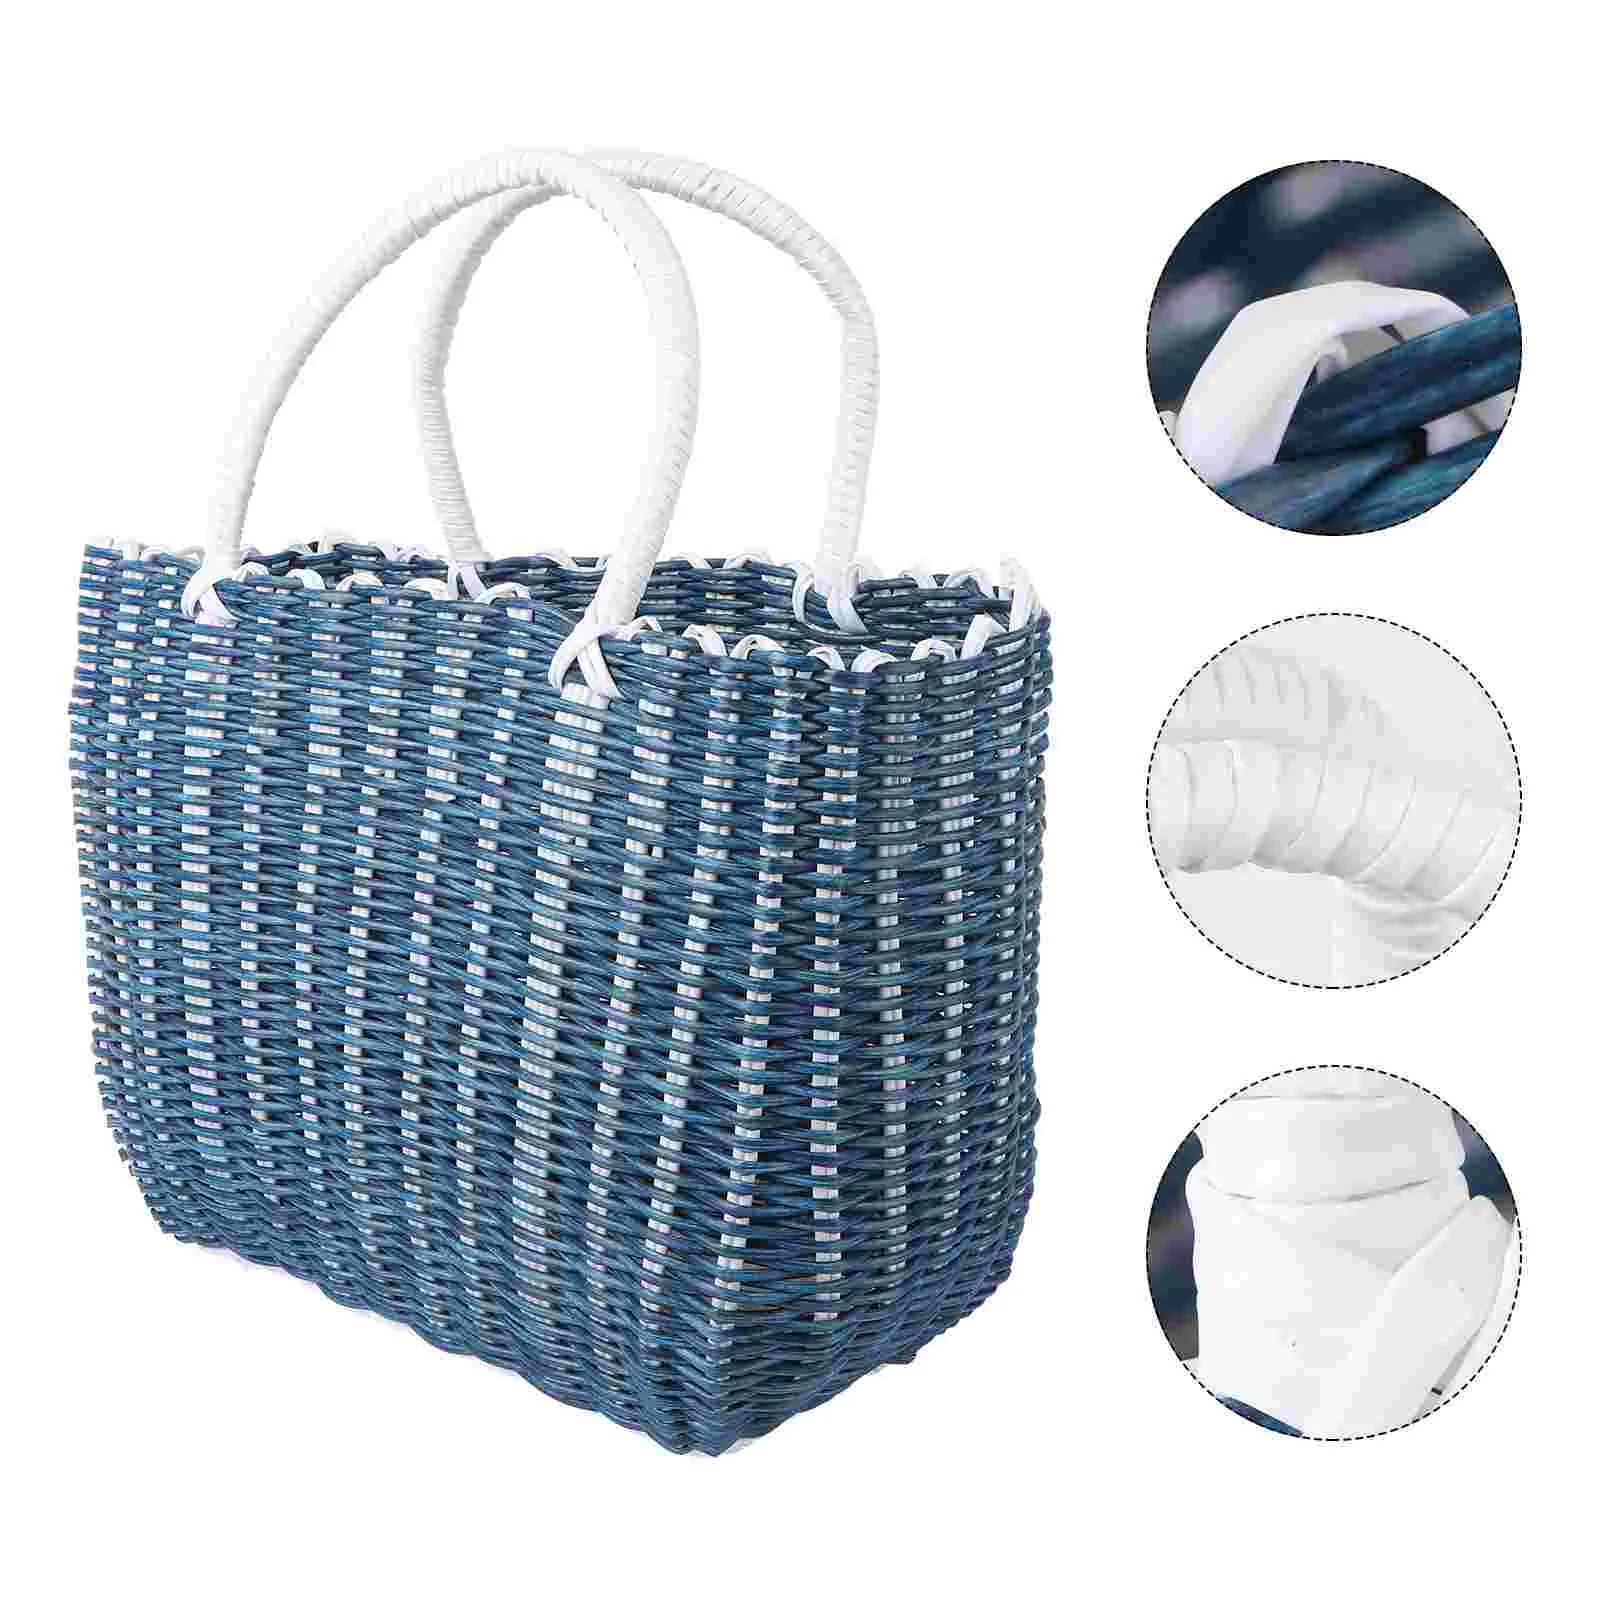 

Плетеная корзина для продуктов, саквояж для покупок в африканском стиле, Соломенная пляжная сумка-тоут с ручками для пикника